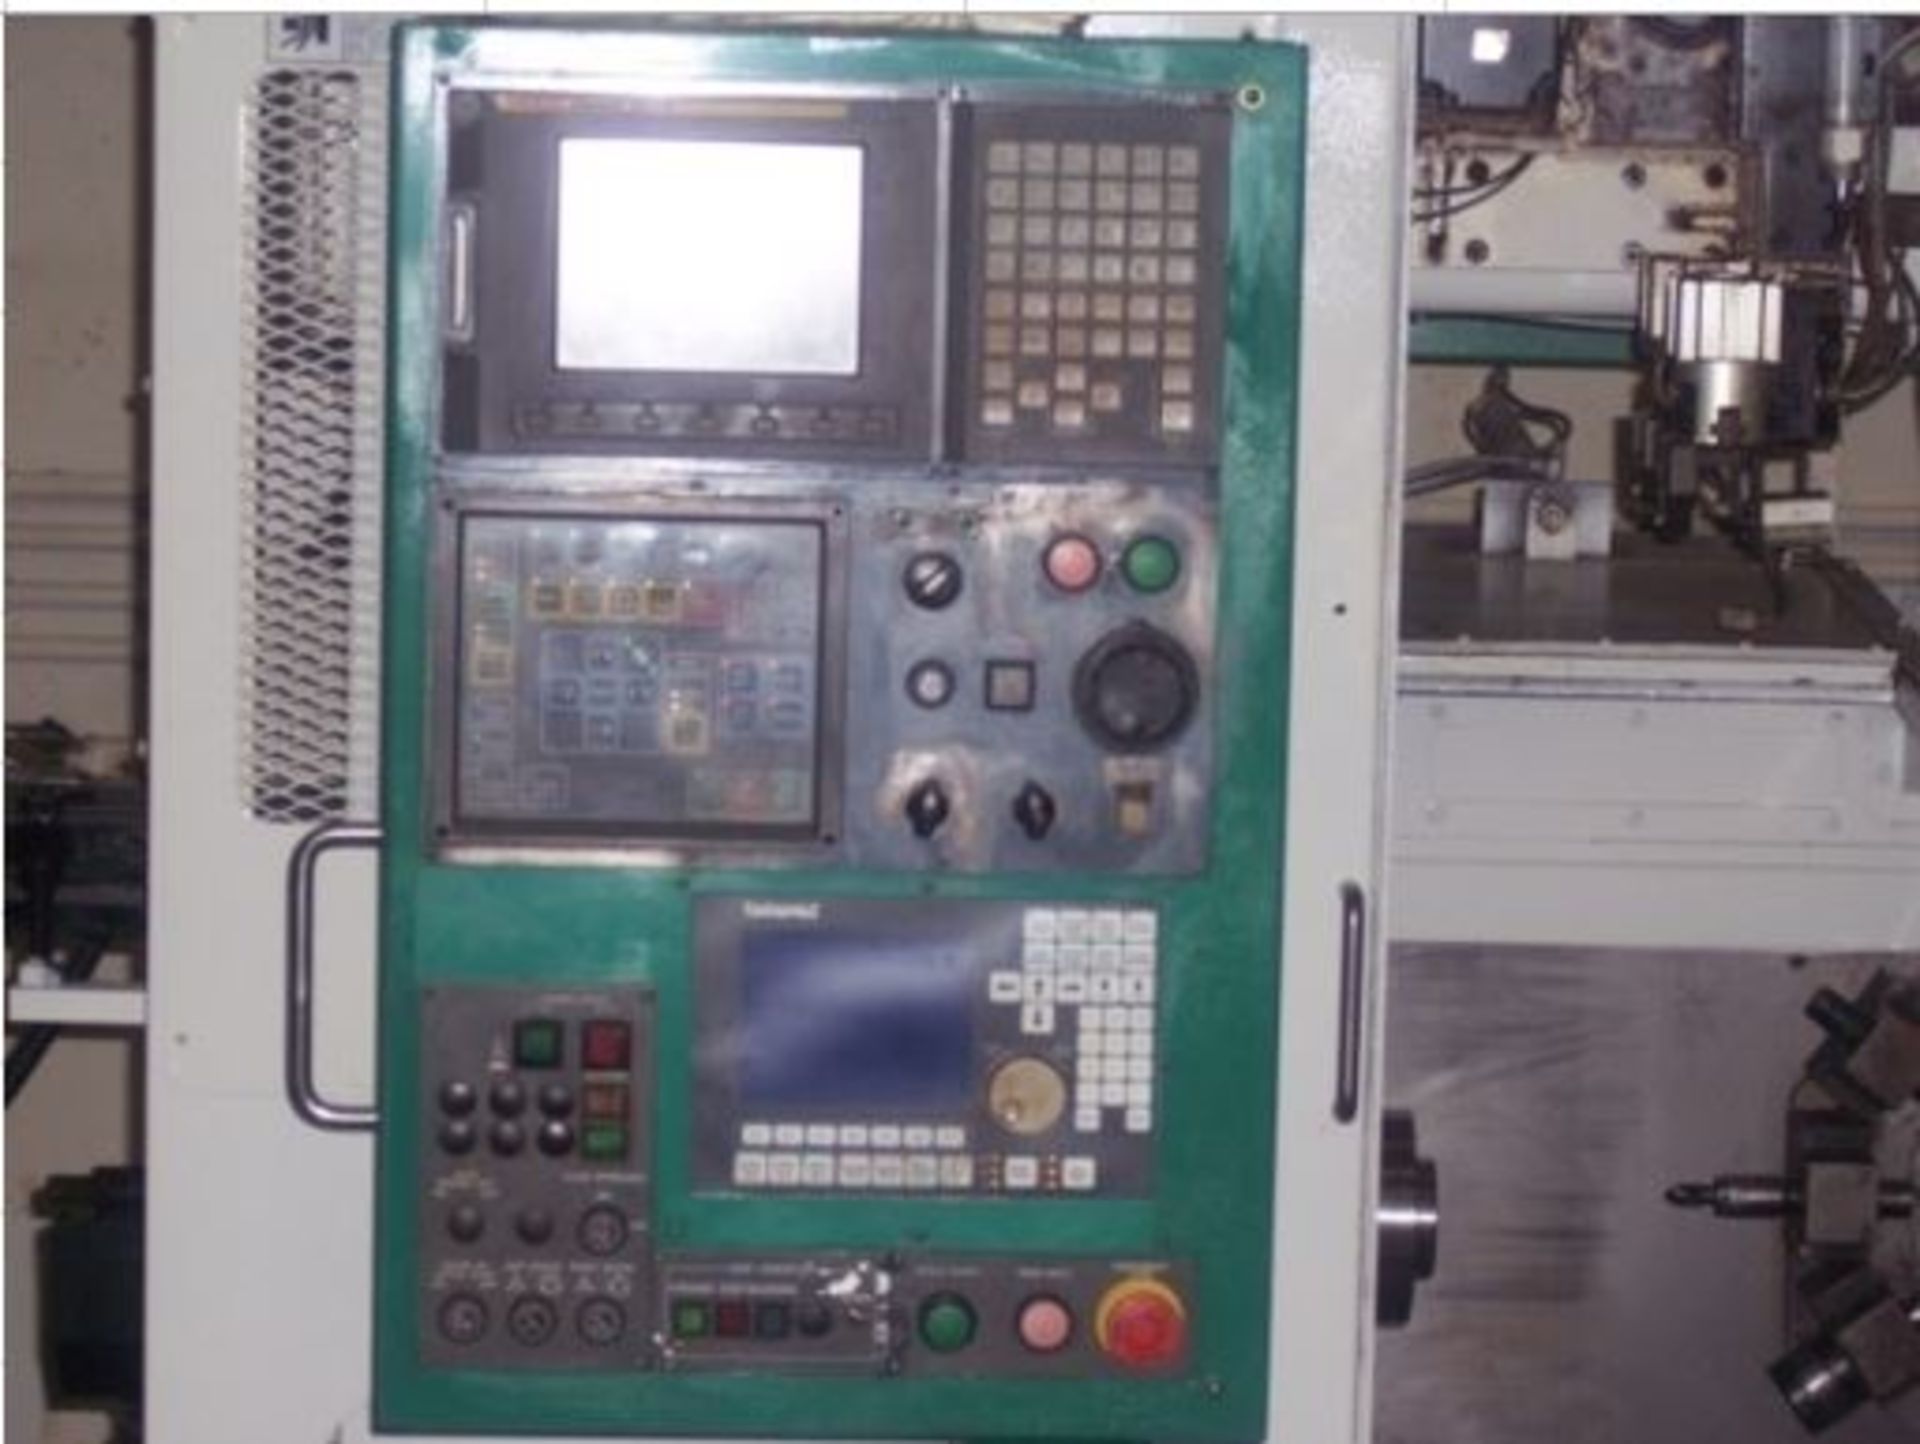 Takamaz XD-10i Value Automated CNC Turning Center, 2003 S/N 300335 Location, Illinois